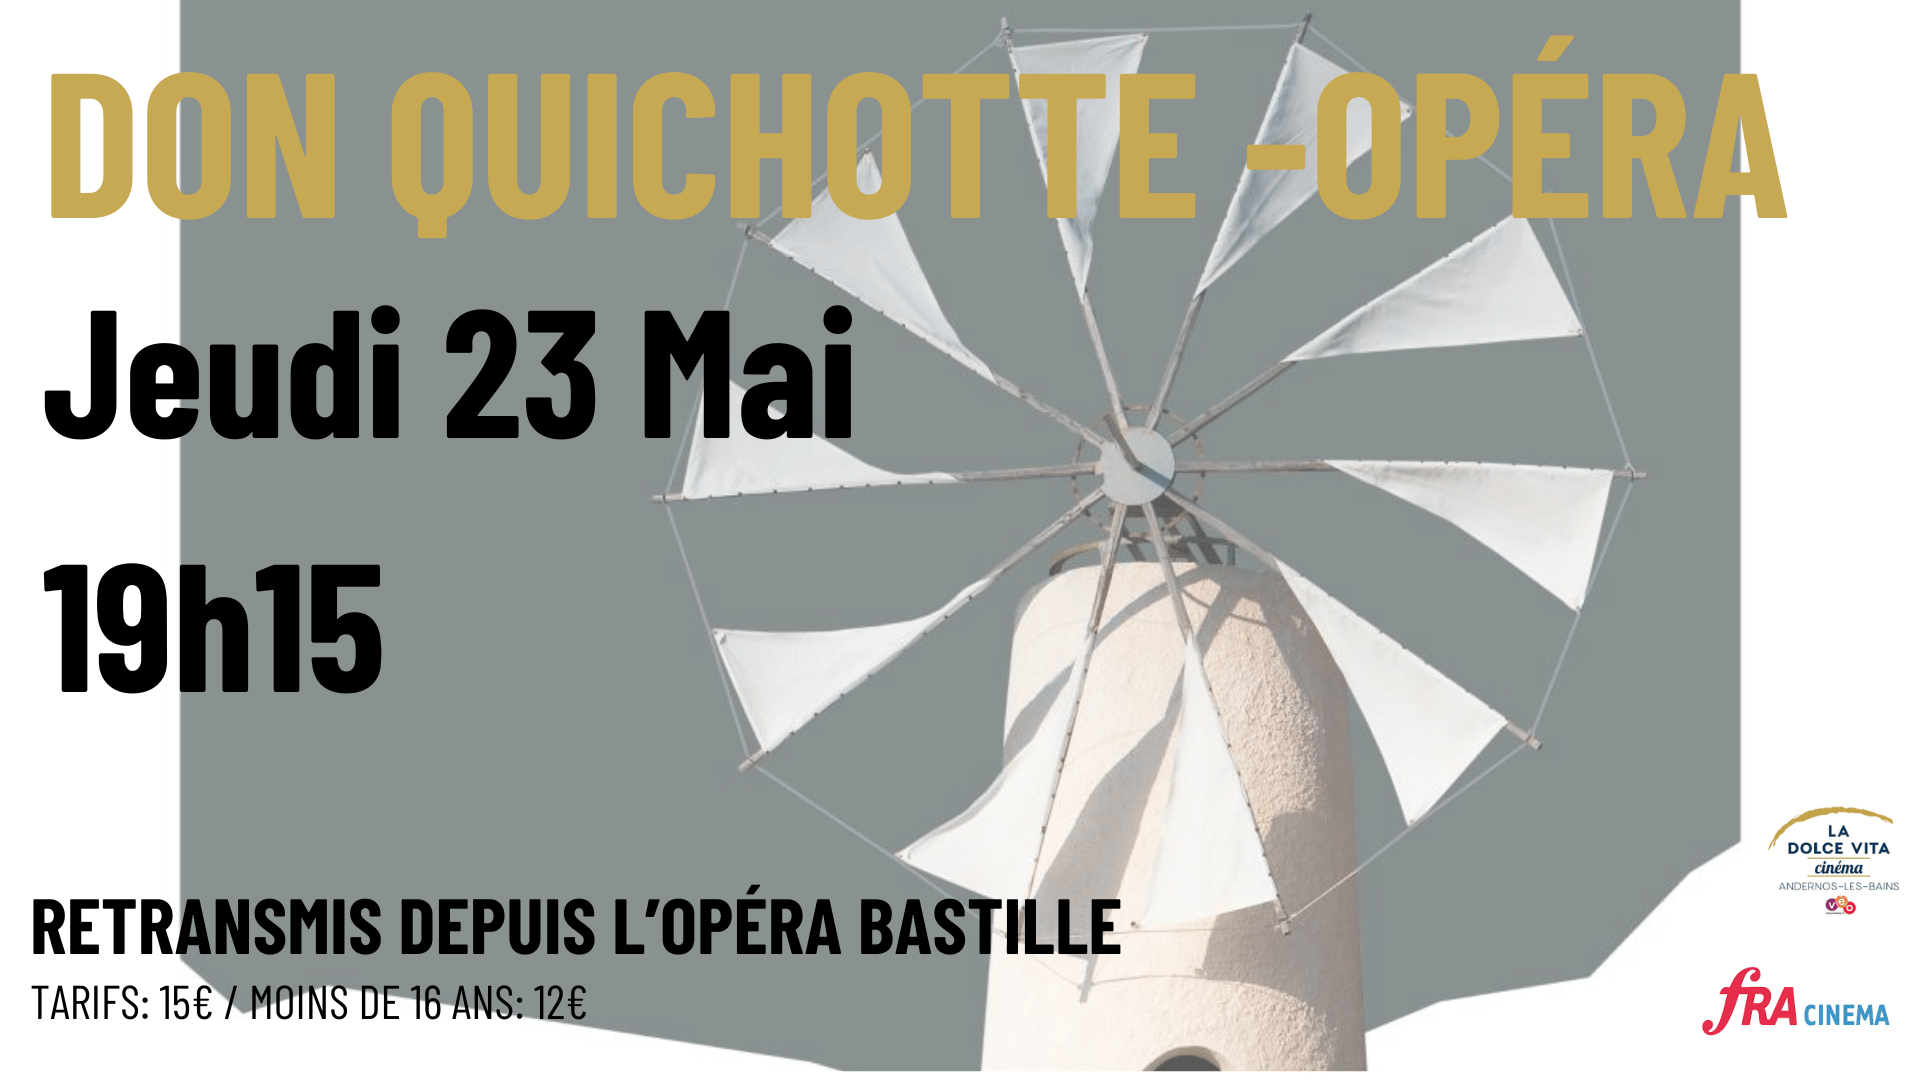 Don Quichotte - Opéra